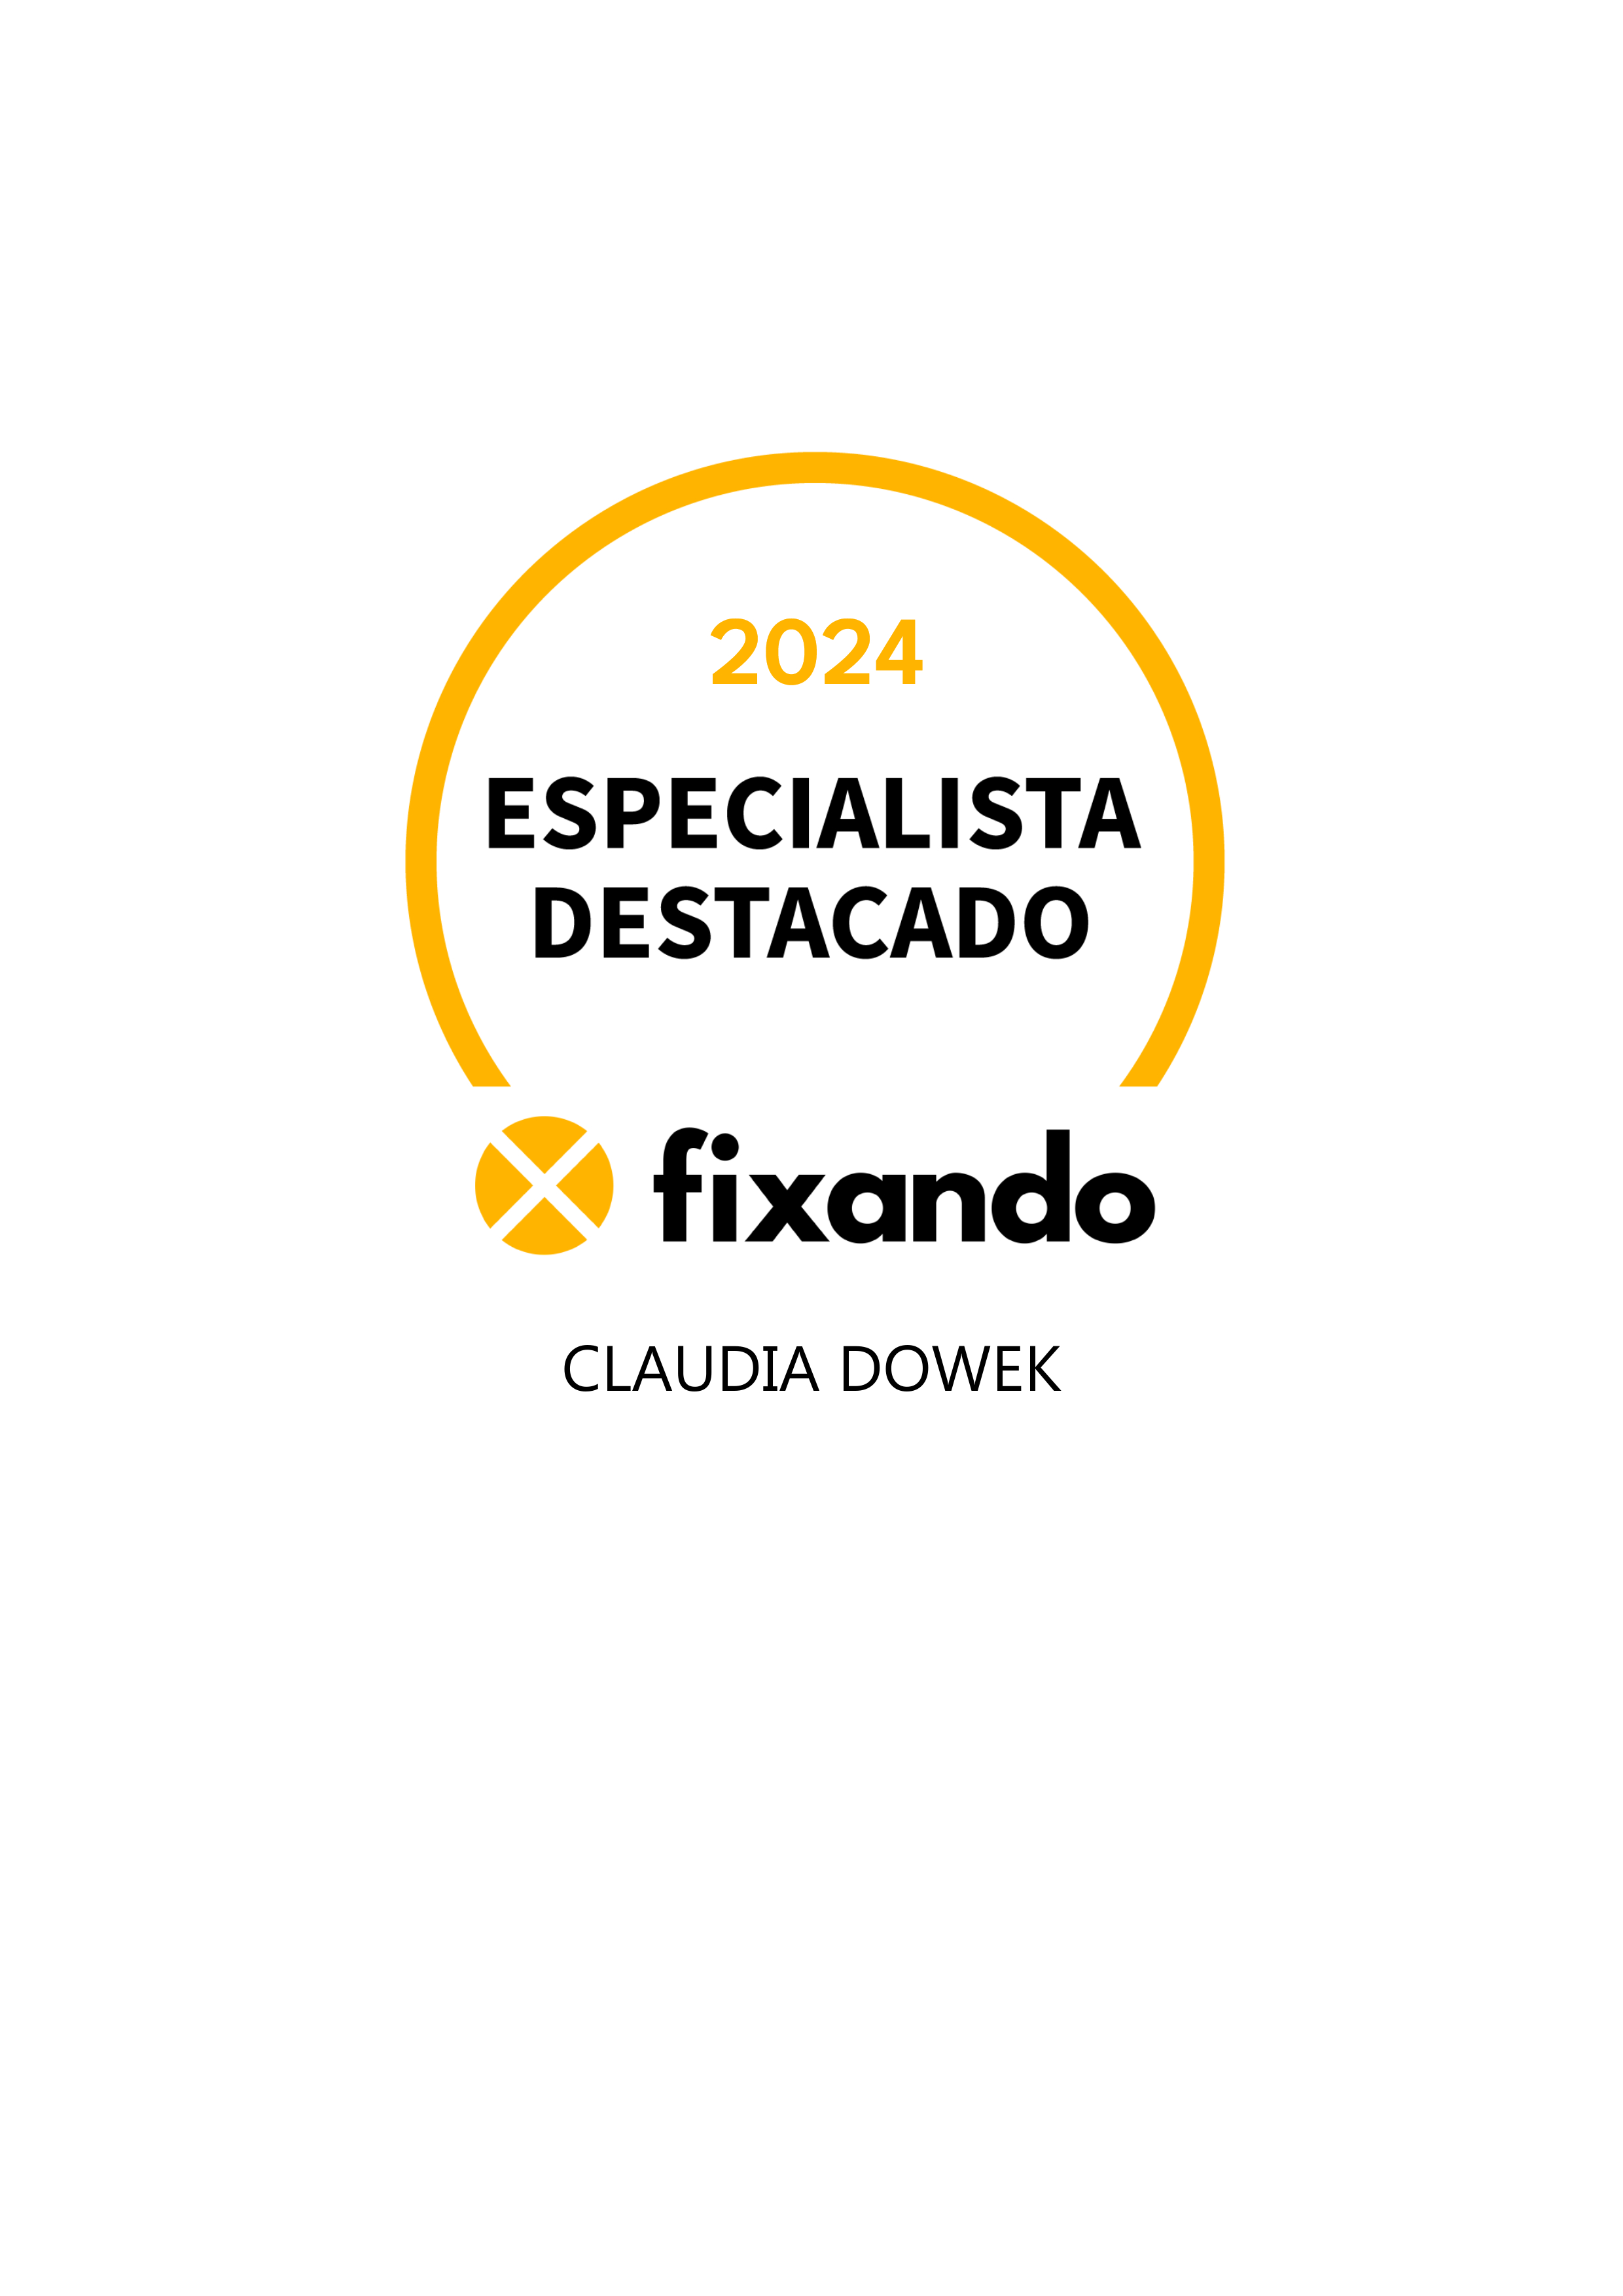 Claudia Dowek - Lisboa - Aulas de Artes, Flores e Trabalhos Manuais